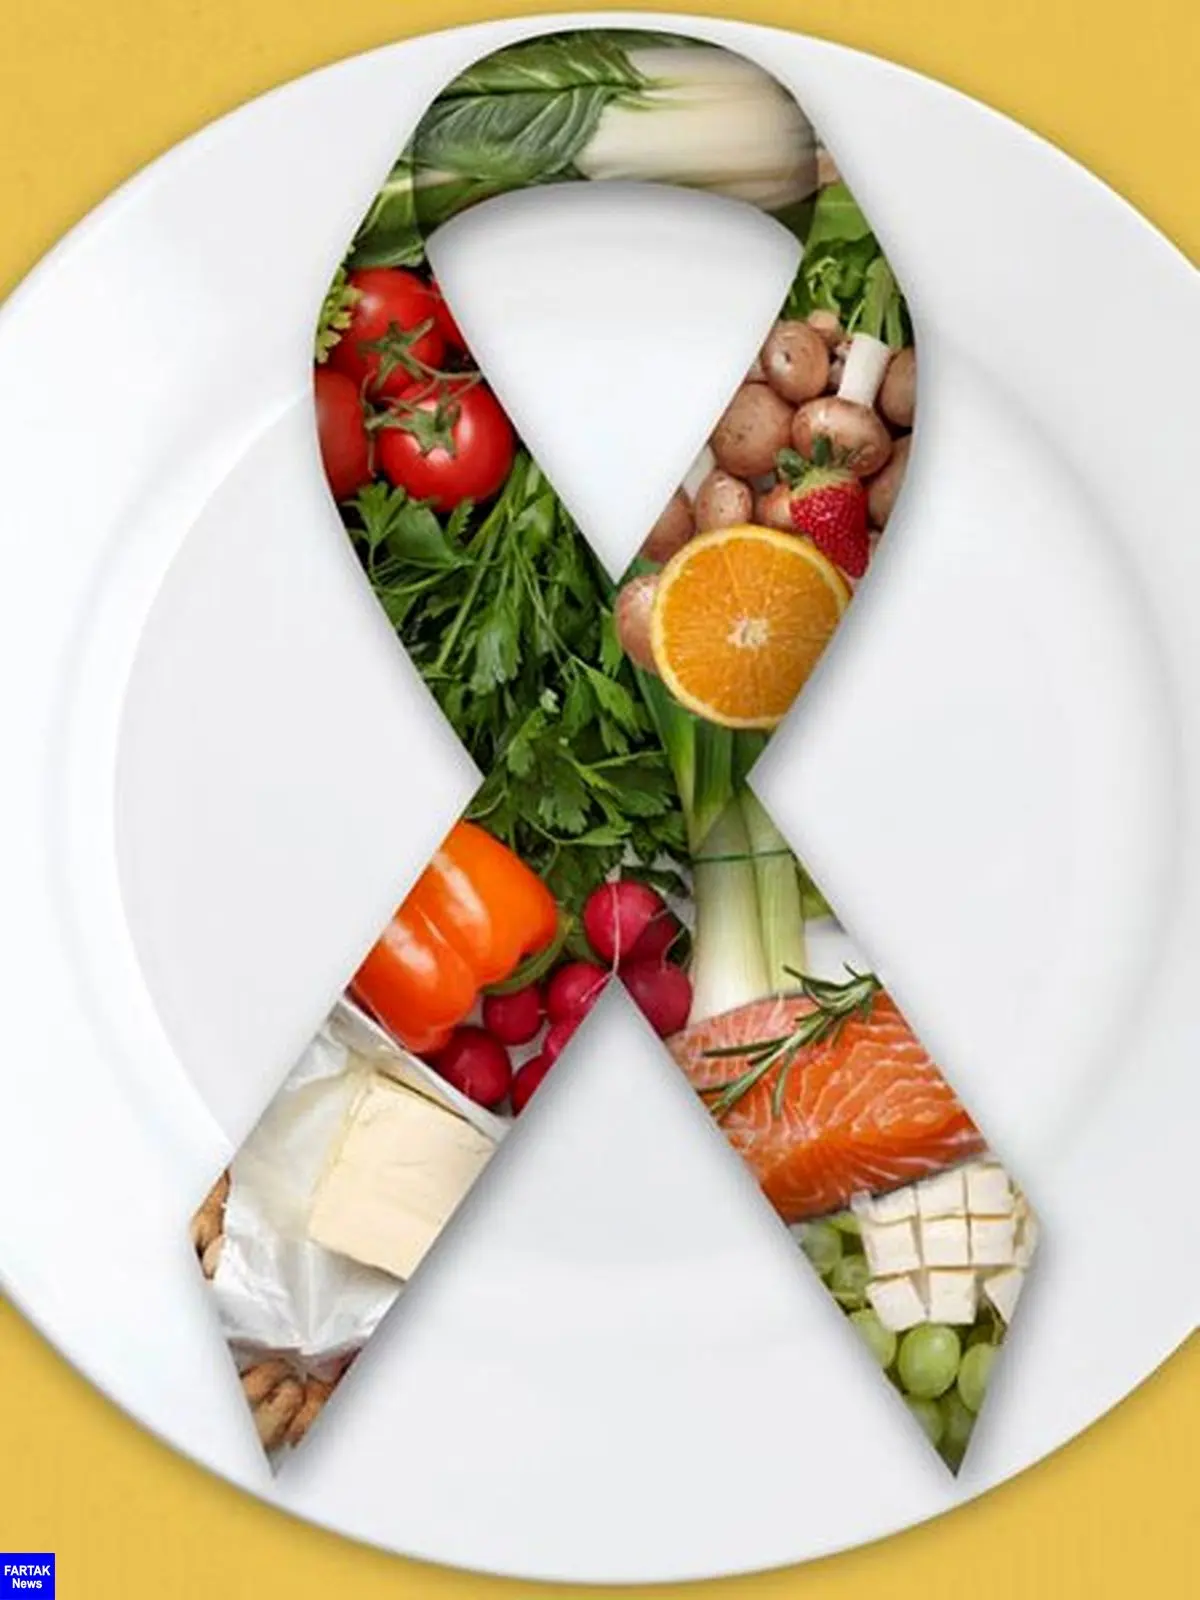 با این چند تغییر ساده در رژیم غذایی از سرطان پیشگیری کنید
